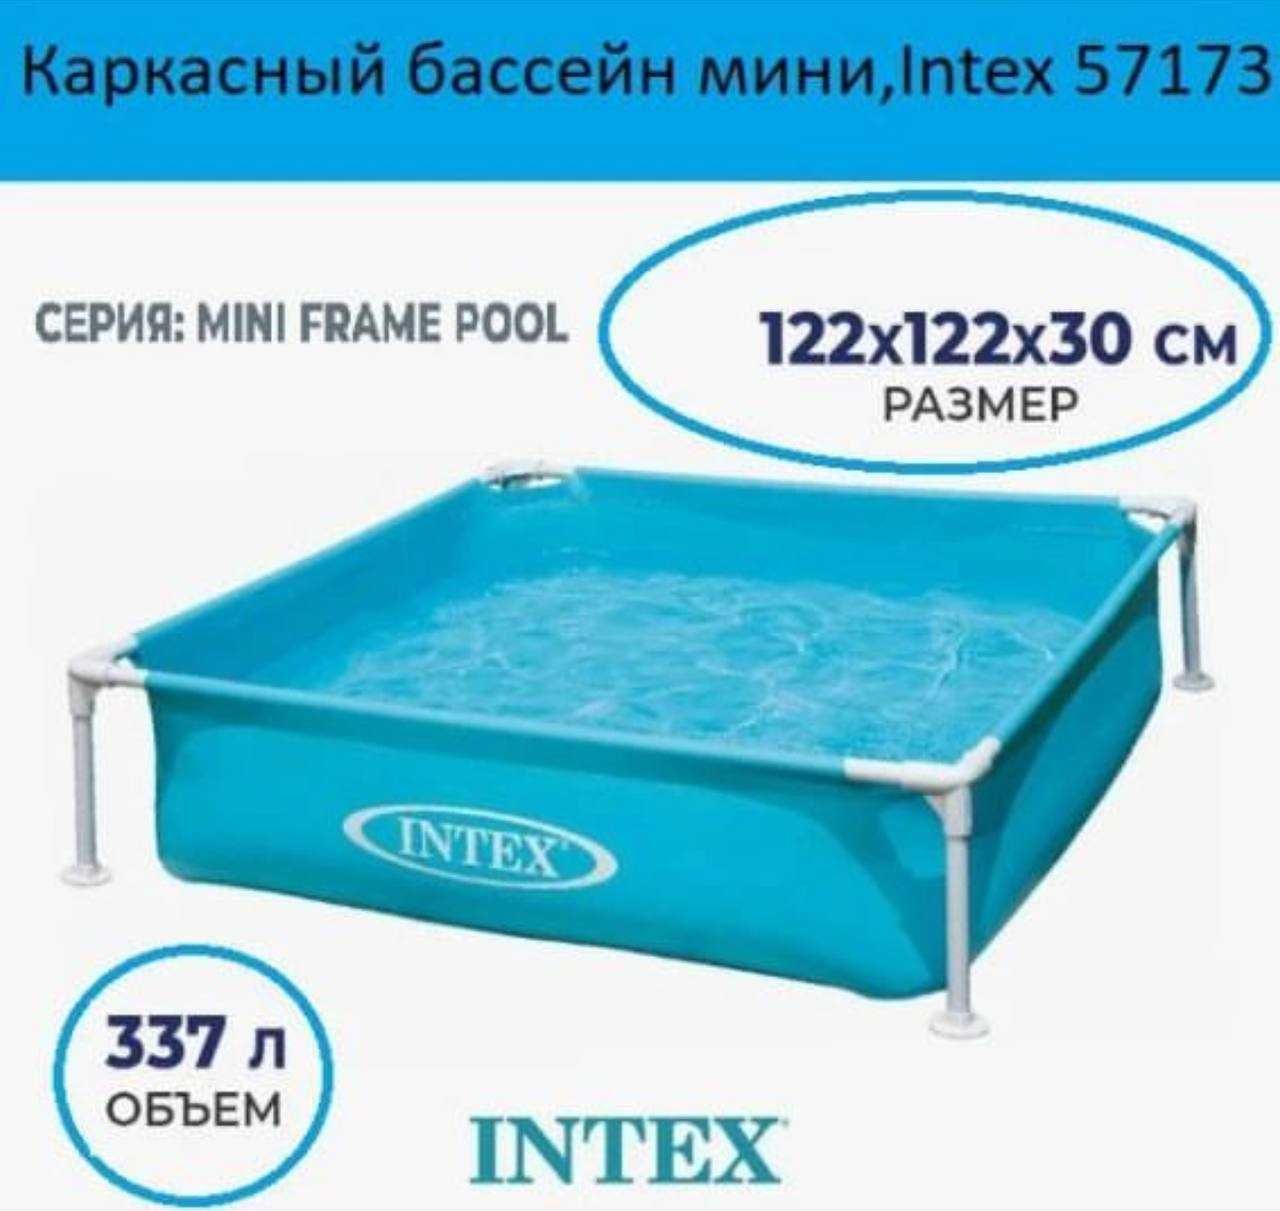 Каркасный бассейн INTEX разные размеры! Доставка в течении 2-3х дней!